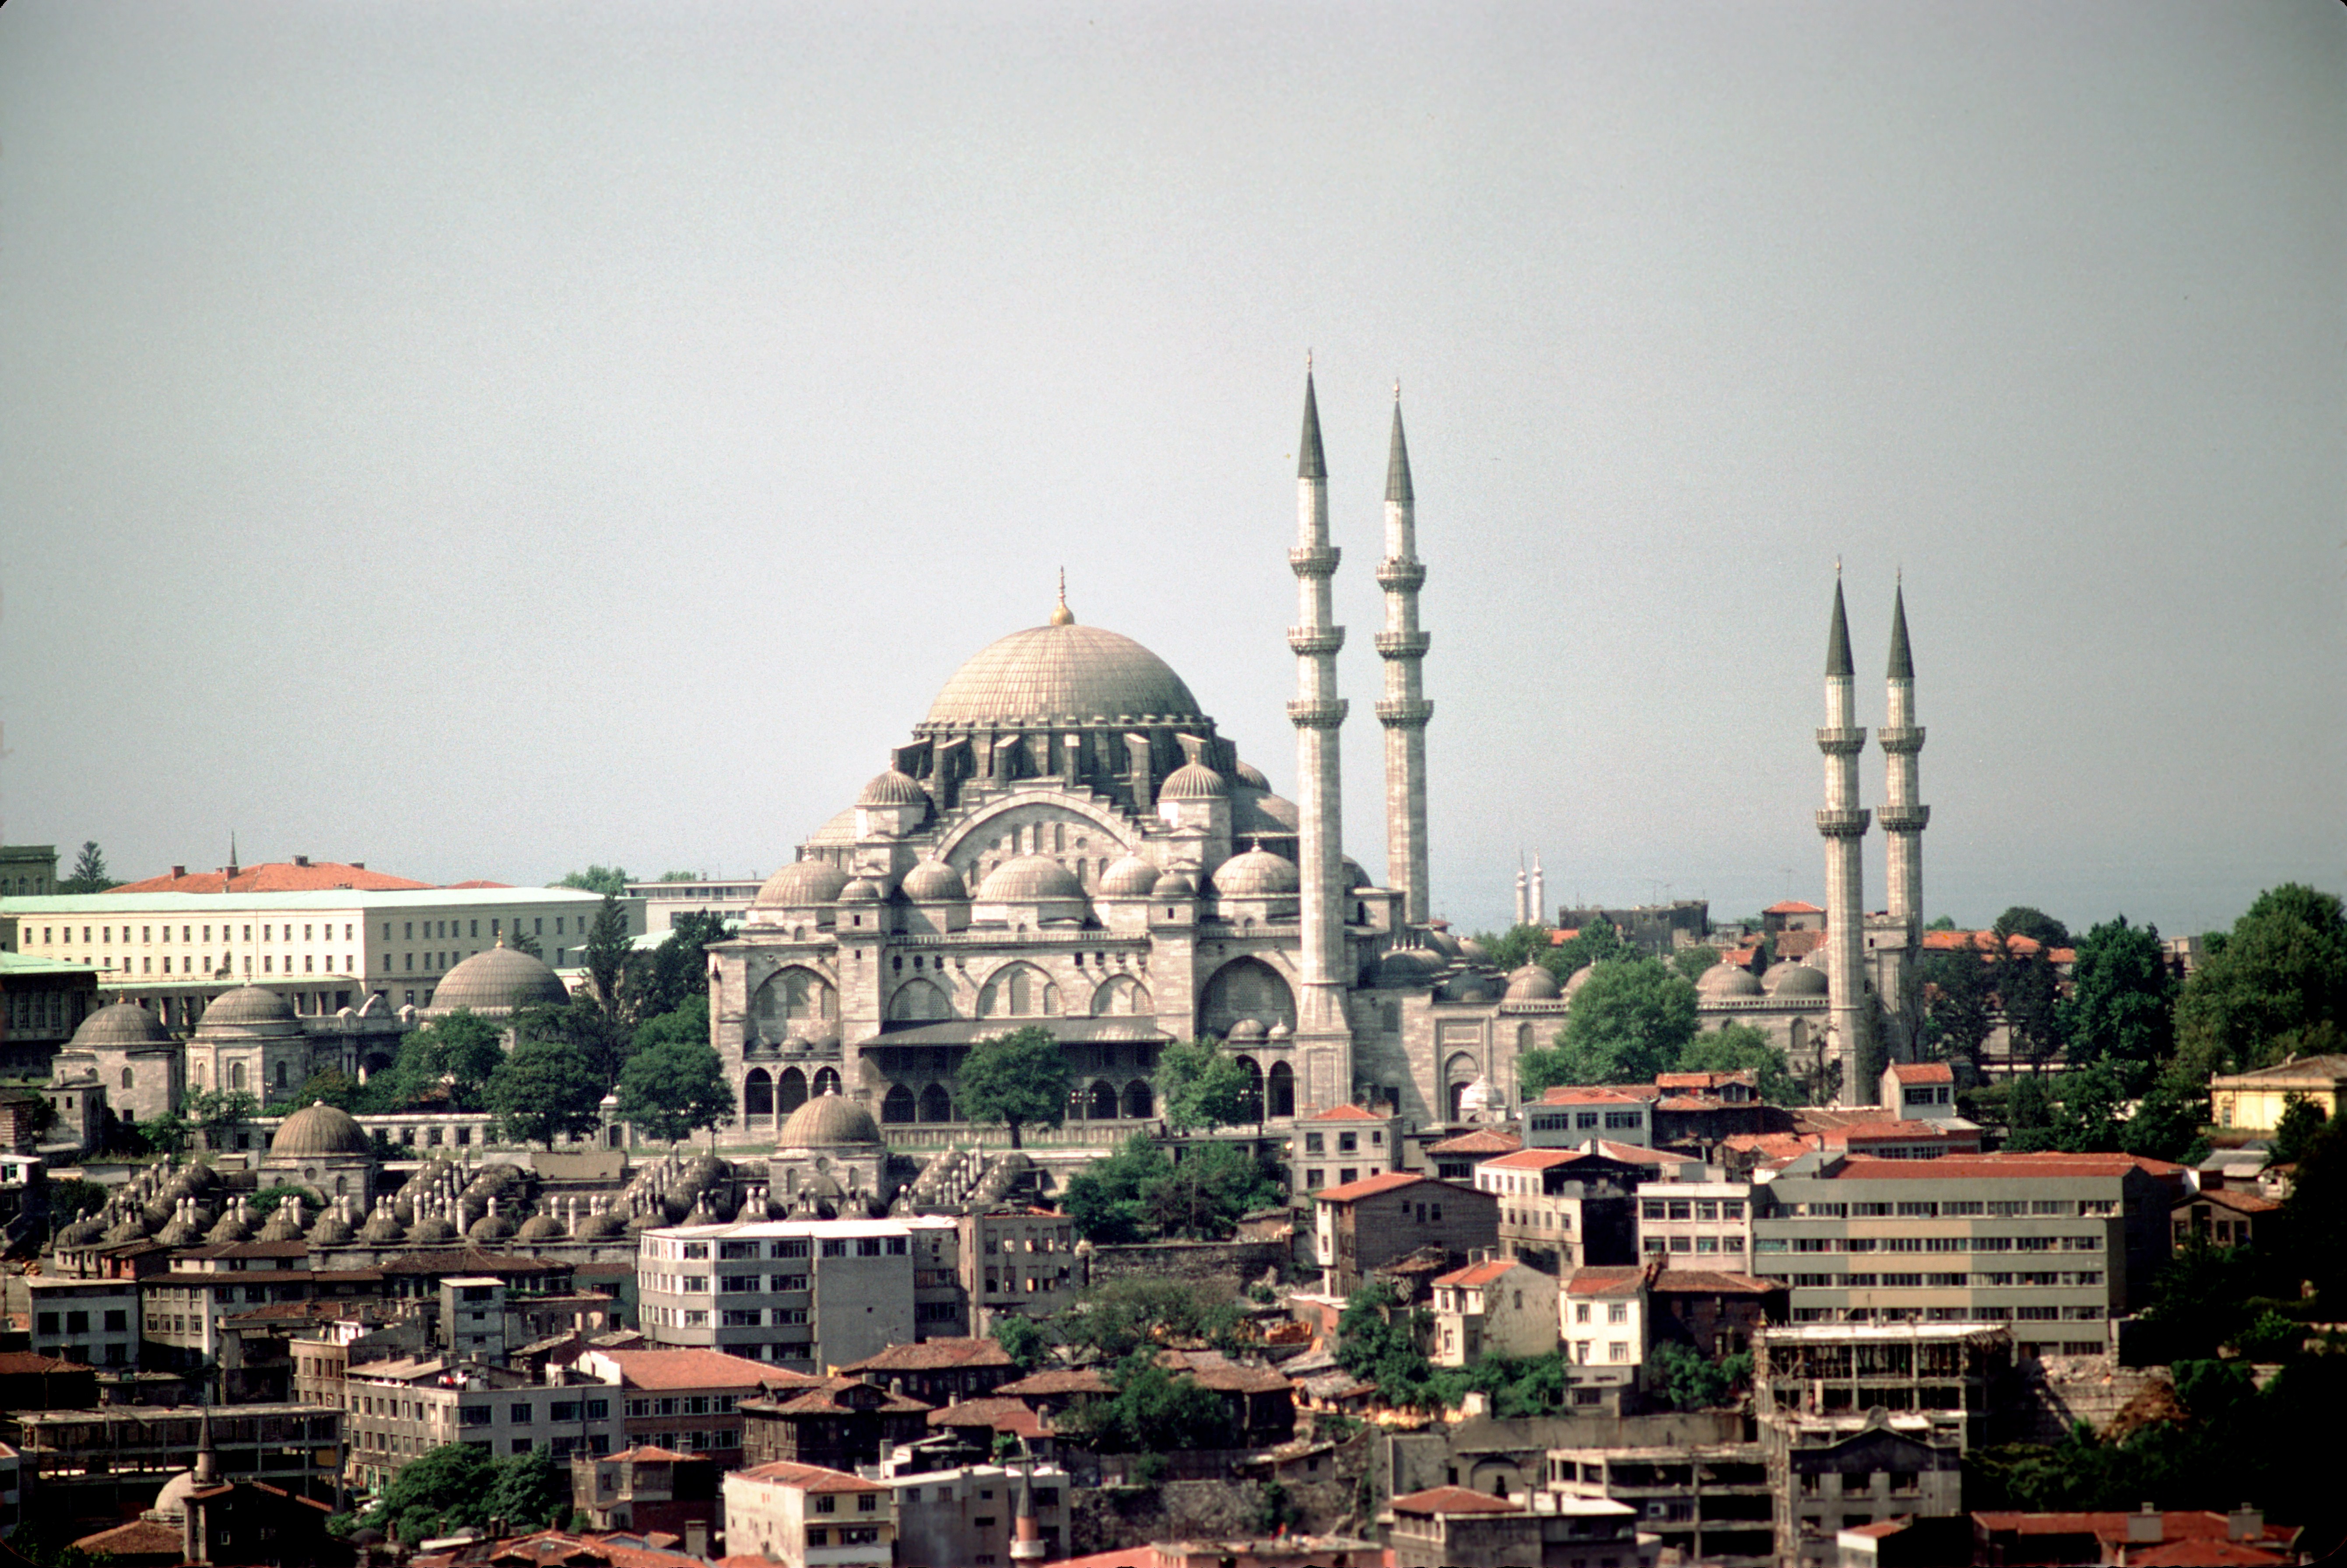 Suleymaniye Mosque Wikipedia